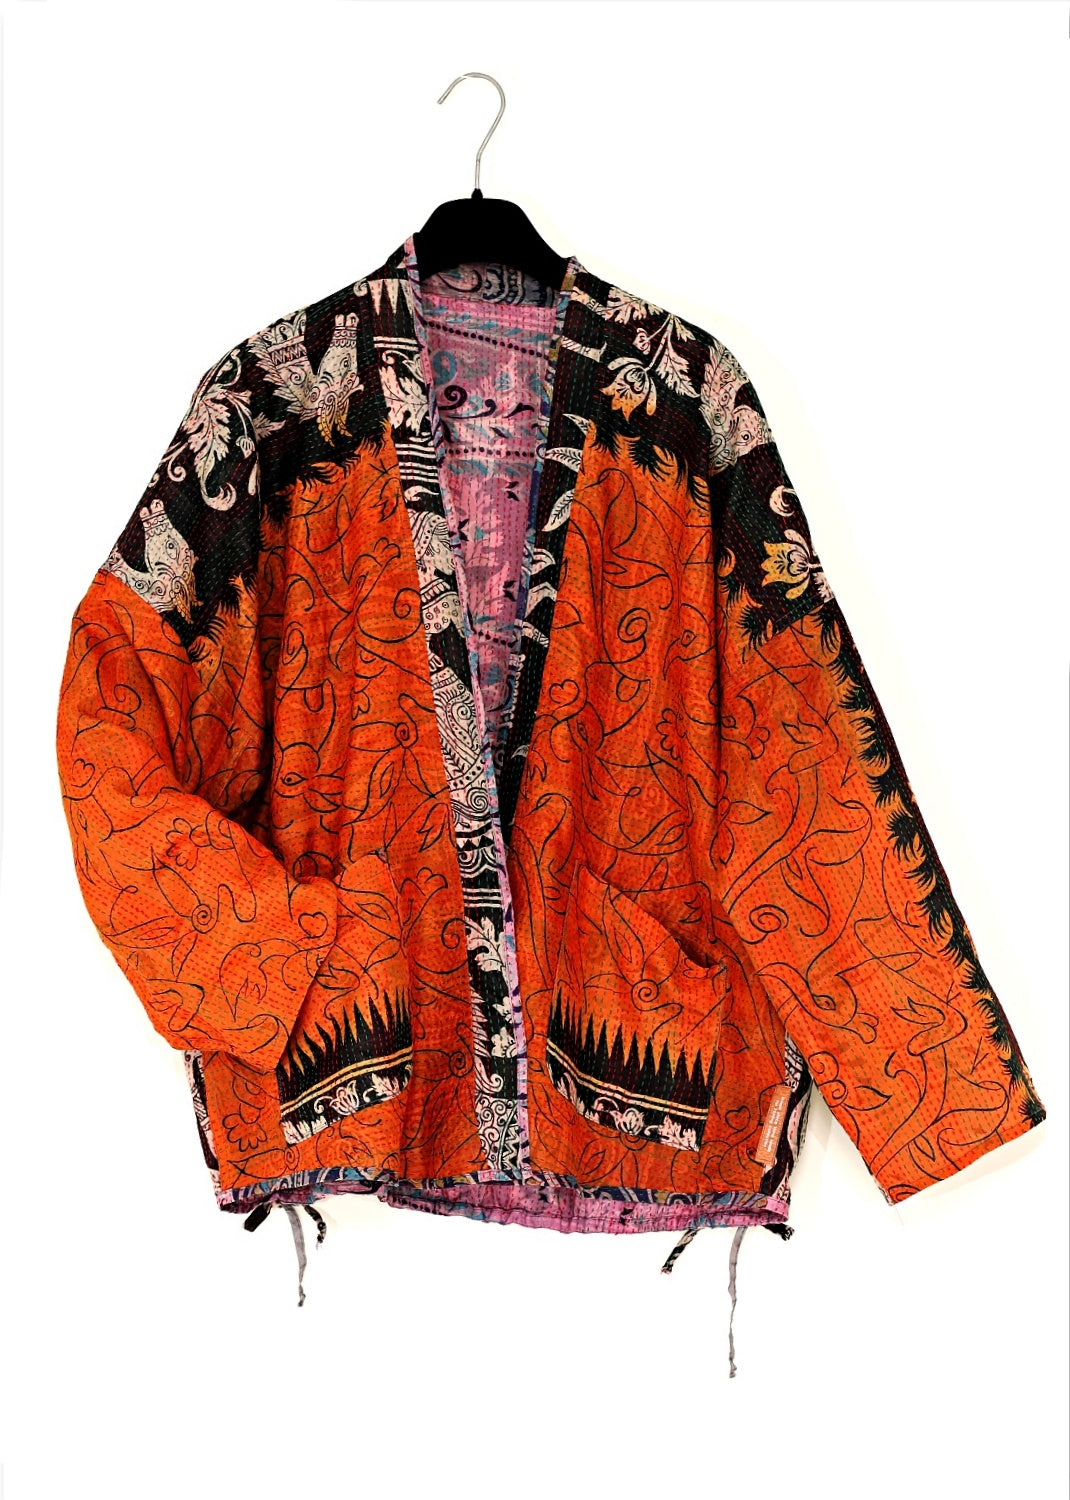 Vändbar siden jacka, av insamlade handtryckta vintage tyger, en vacker blandning av konst och hantverk. Jackan är helt unik och finns bara i ett exemplar.